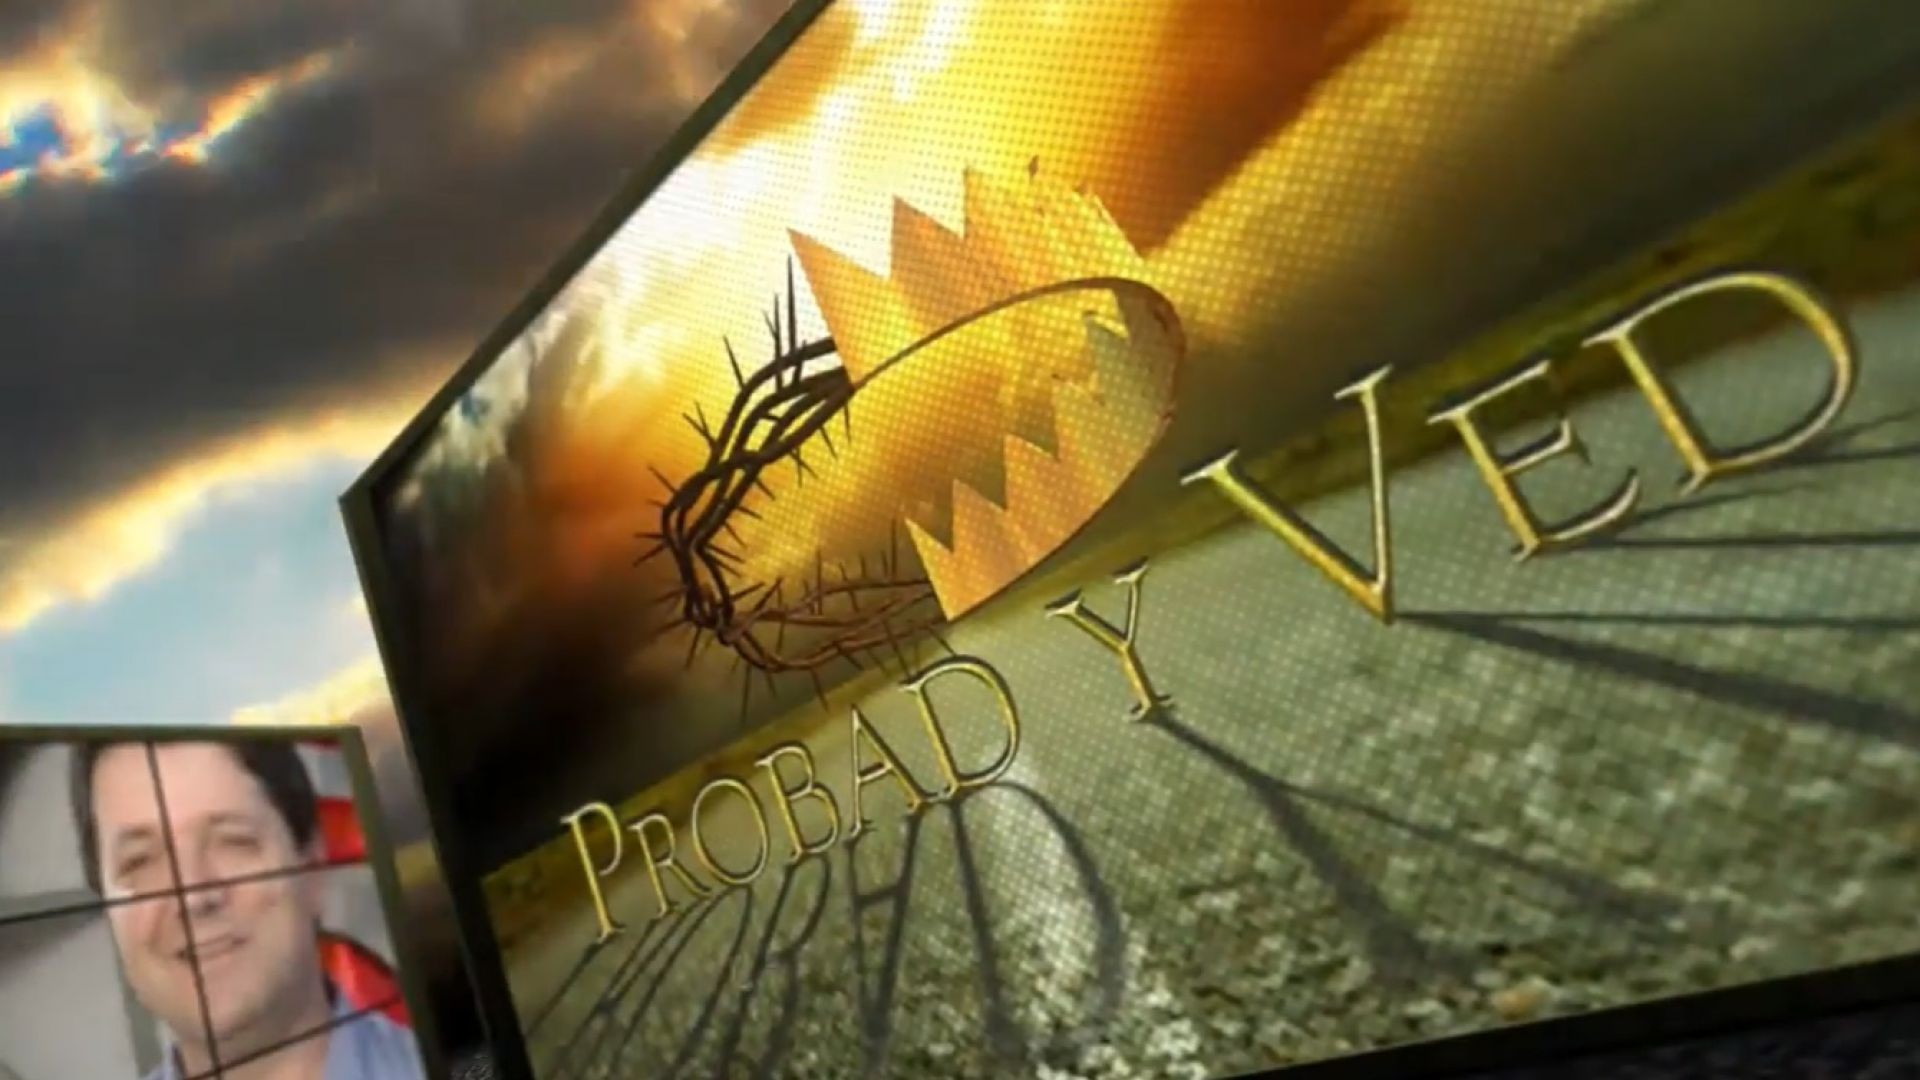 Probad y Ved 2012 - Un sueño real